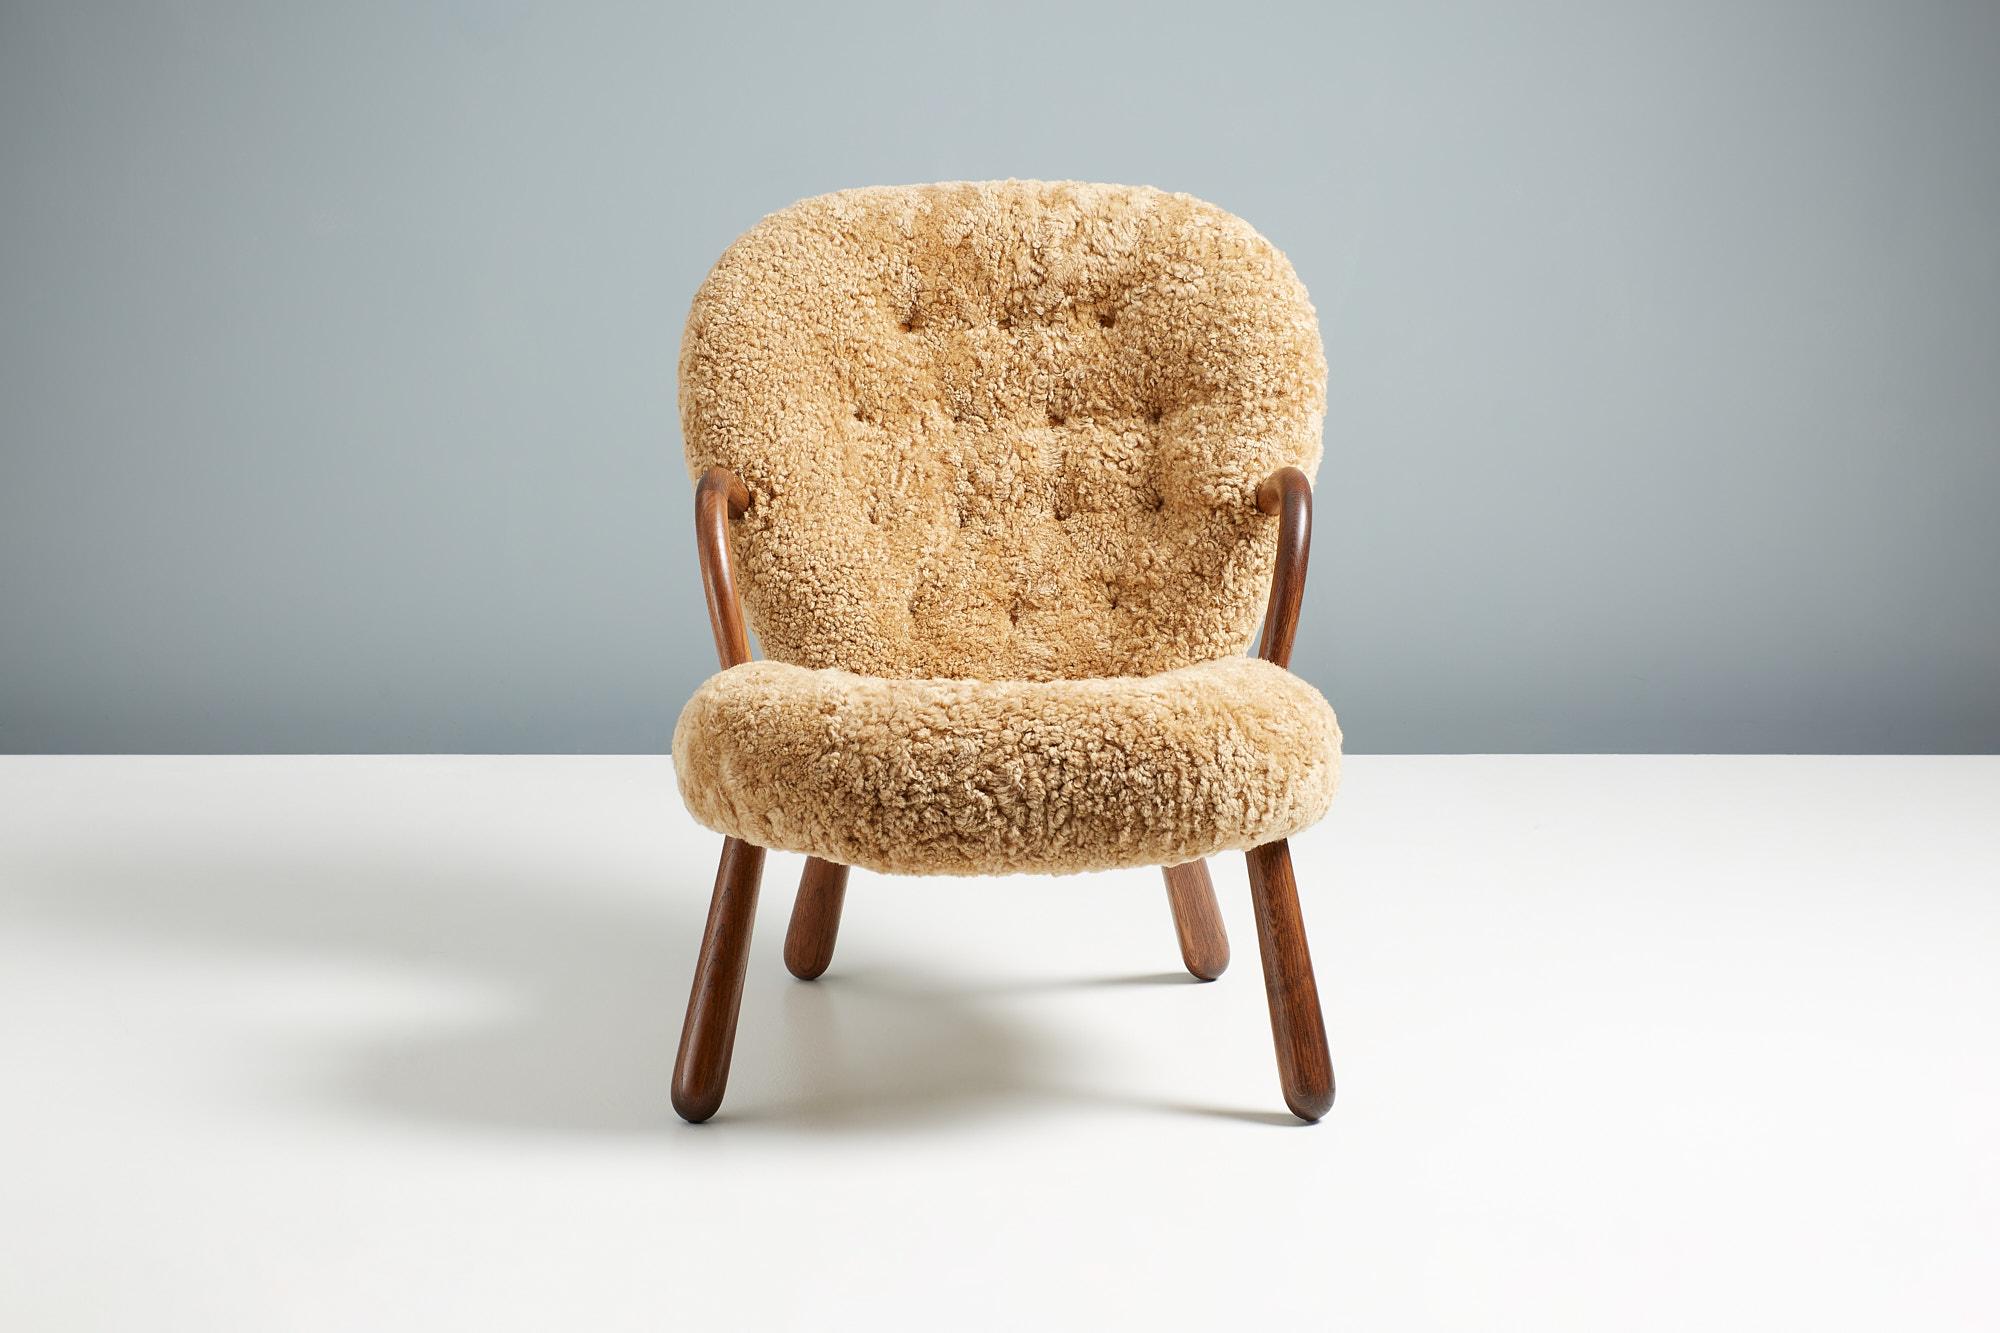 Offizielle Re-Edition des kultigen Clam Chair von Arnold Madsen.

Dagmar ist stolz darauf, in Zusammenarbeit mit dem Nachlass von Arnold Madsen den Clam Chair - eines der beliebtesten und begehrtesten skandinavischen Möbeldesigns des 20.